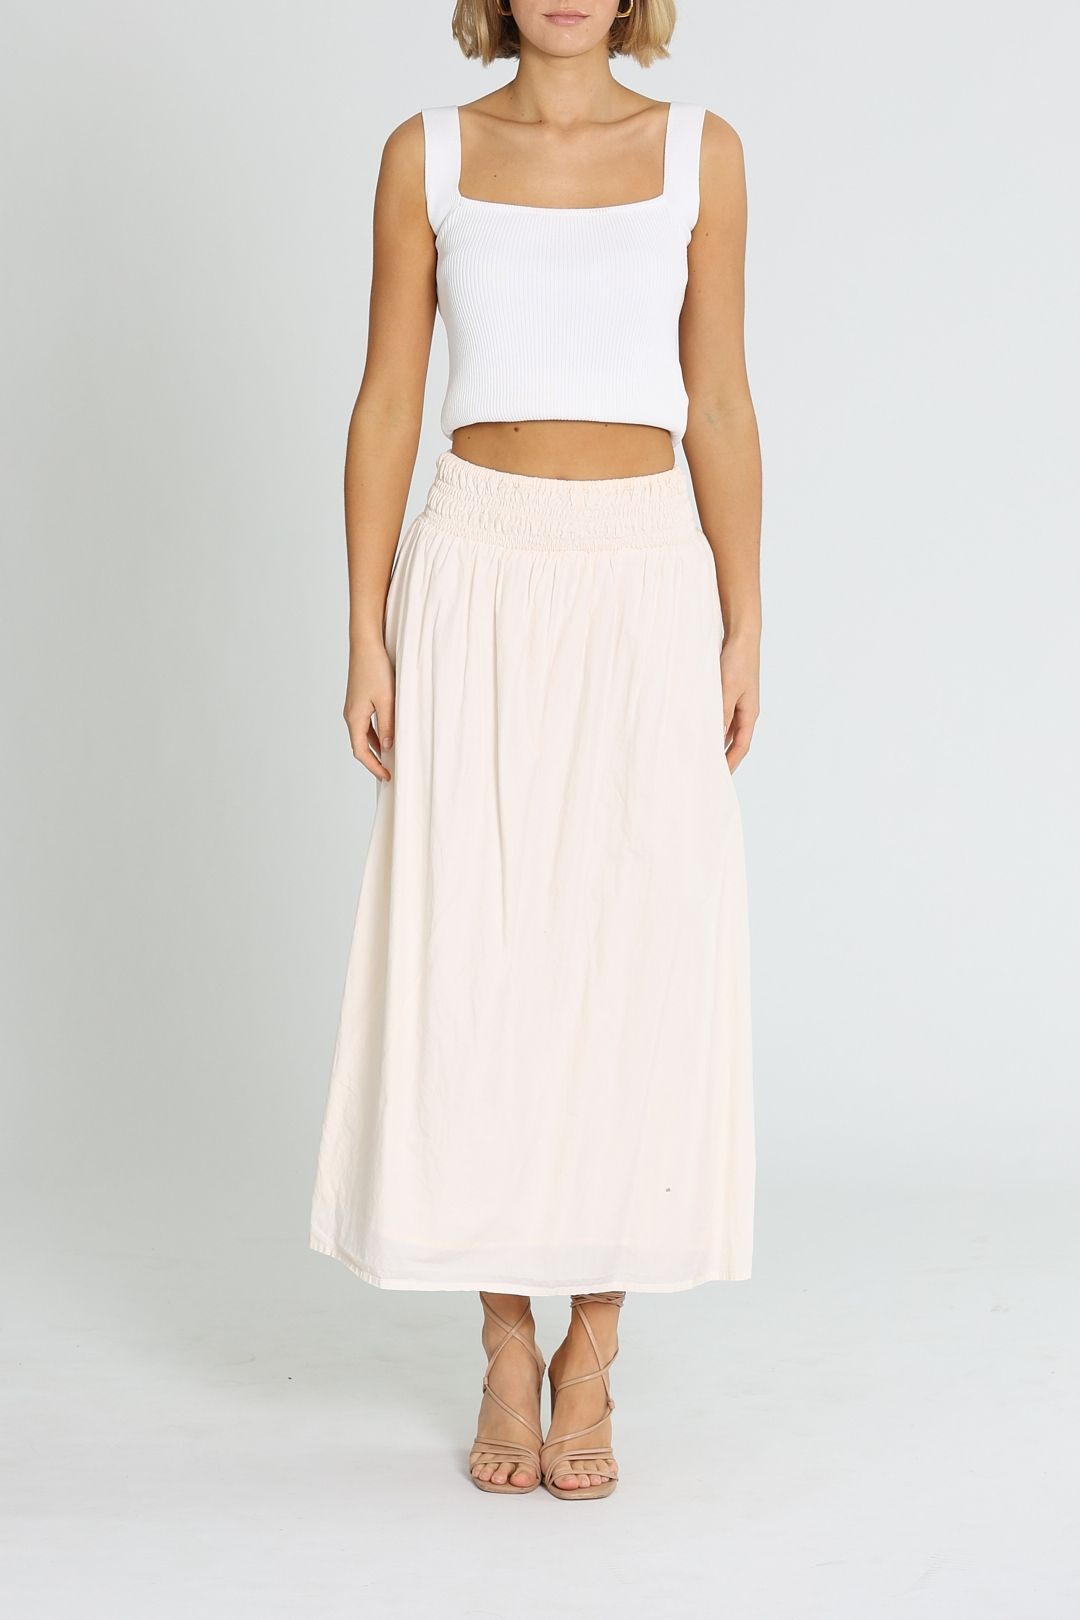 Faithfull Kiera Midi Skirt Blush